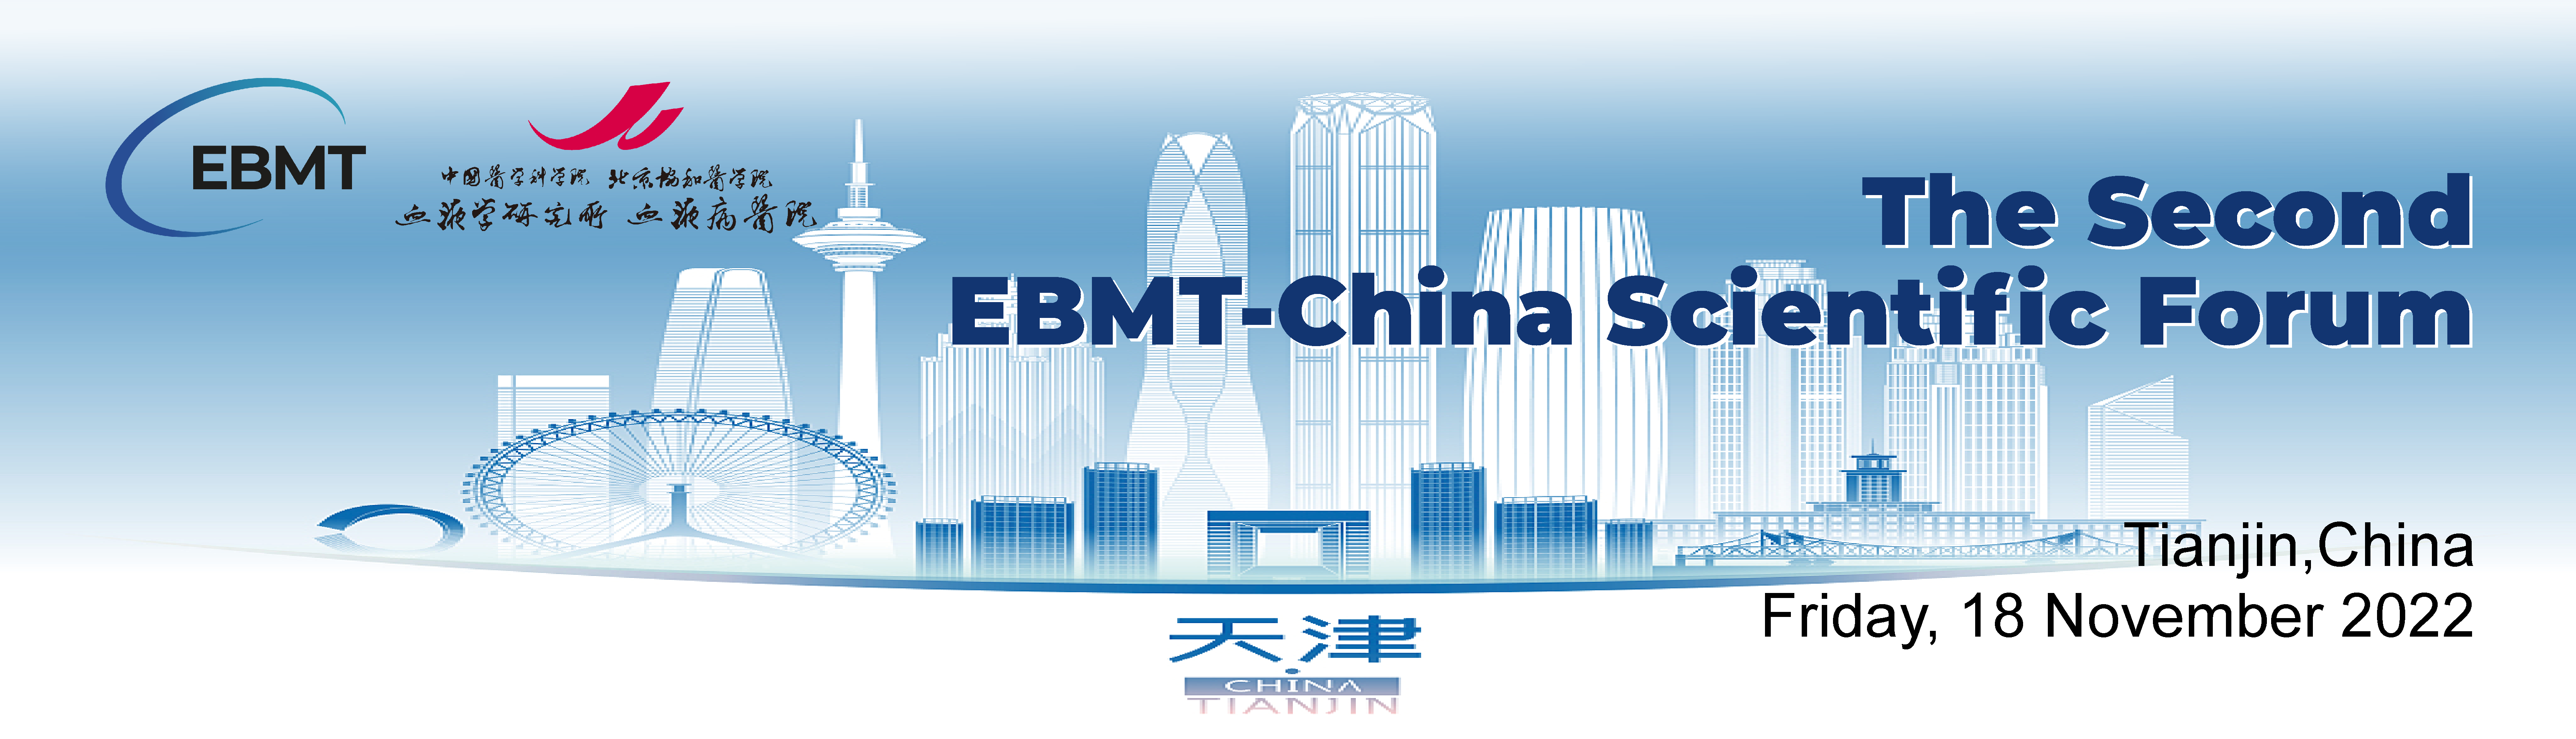 2nd EBMT-China Meeting Header